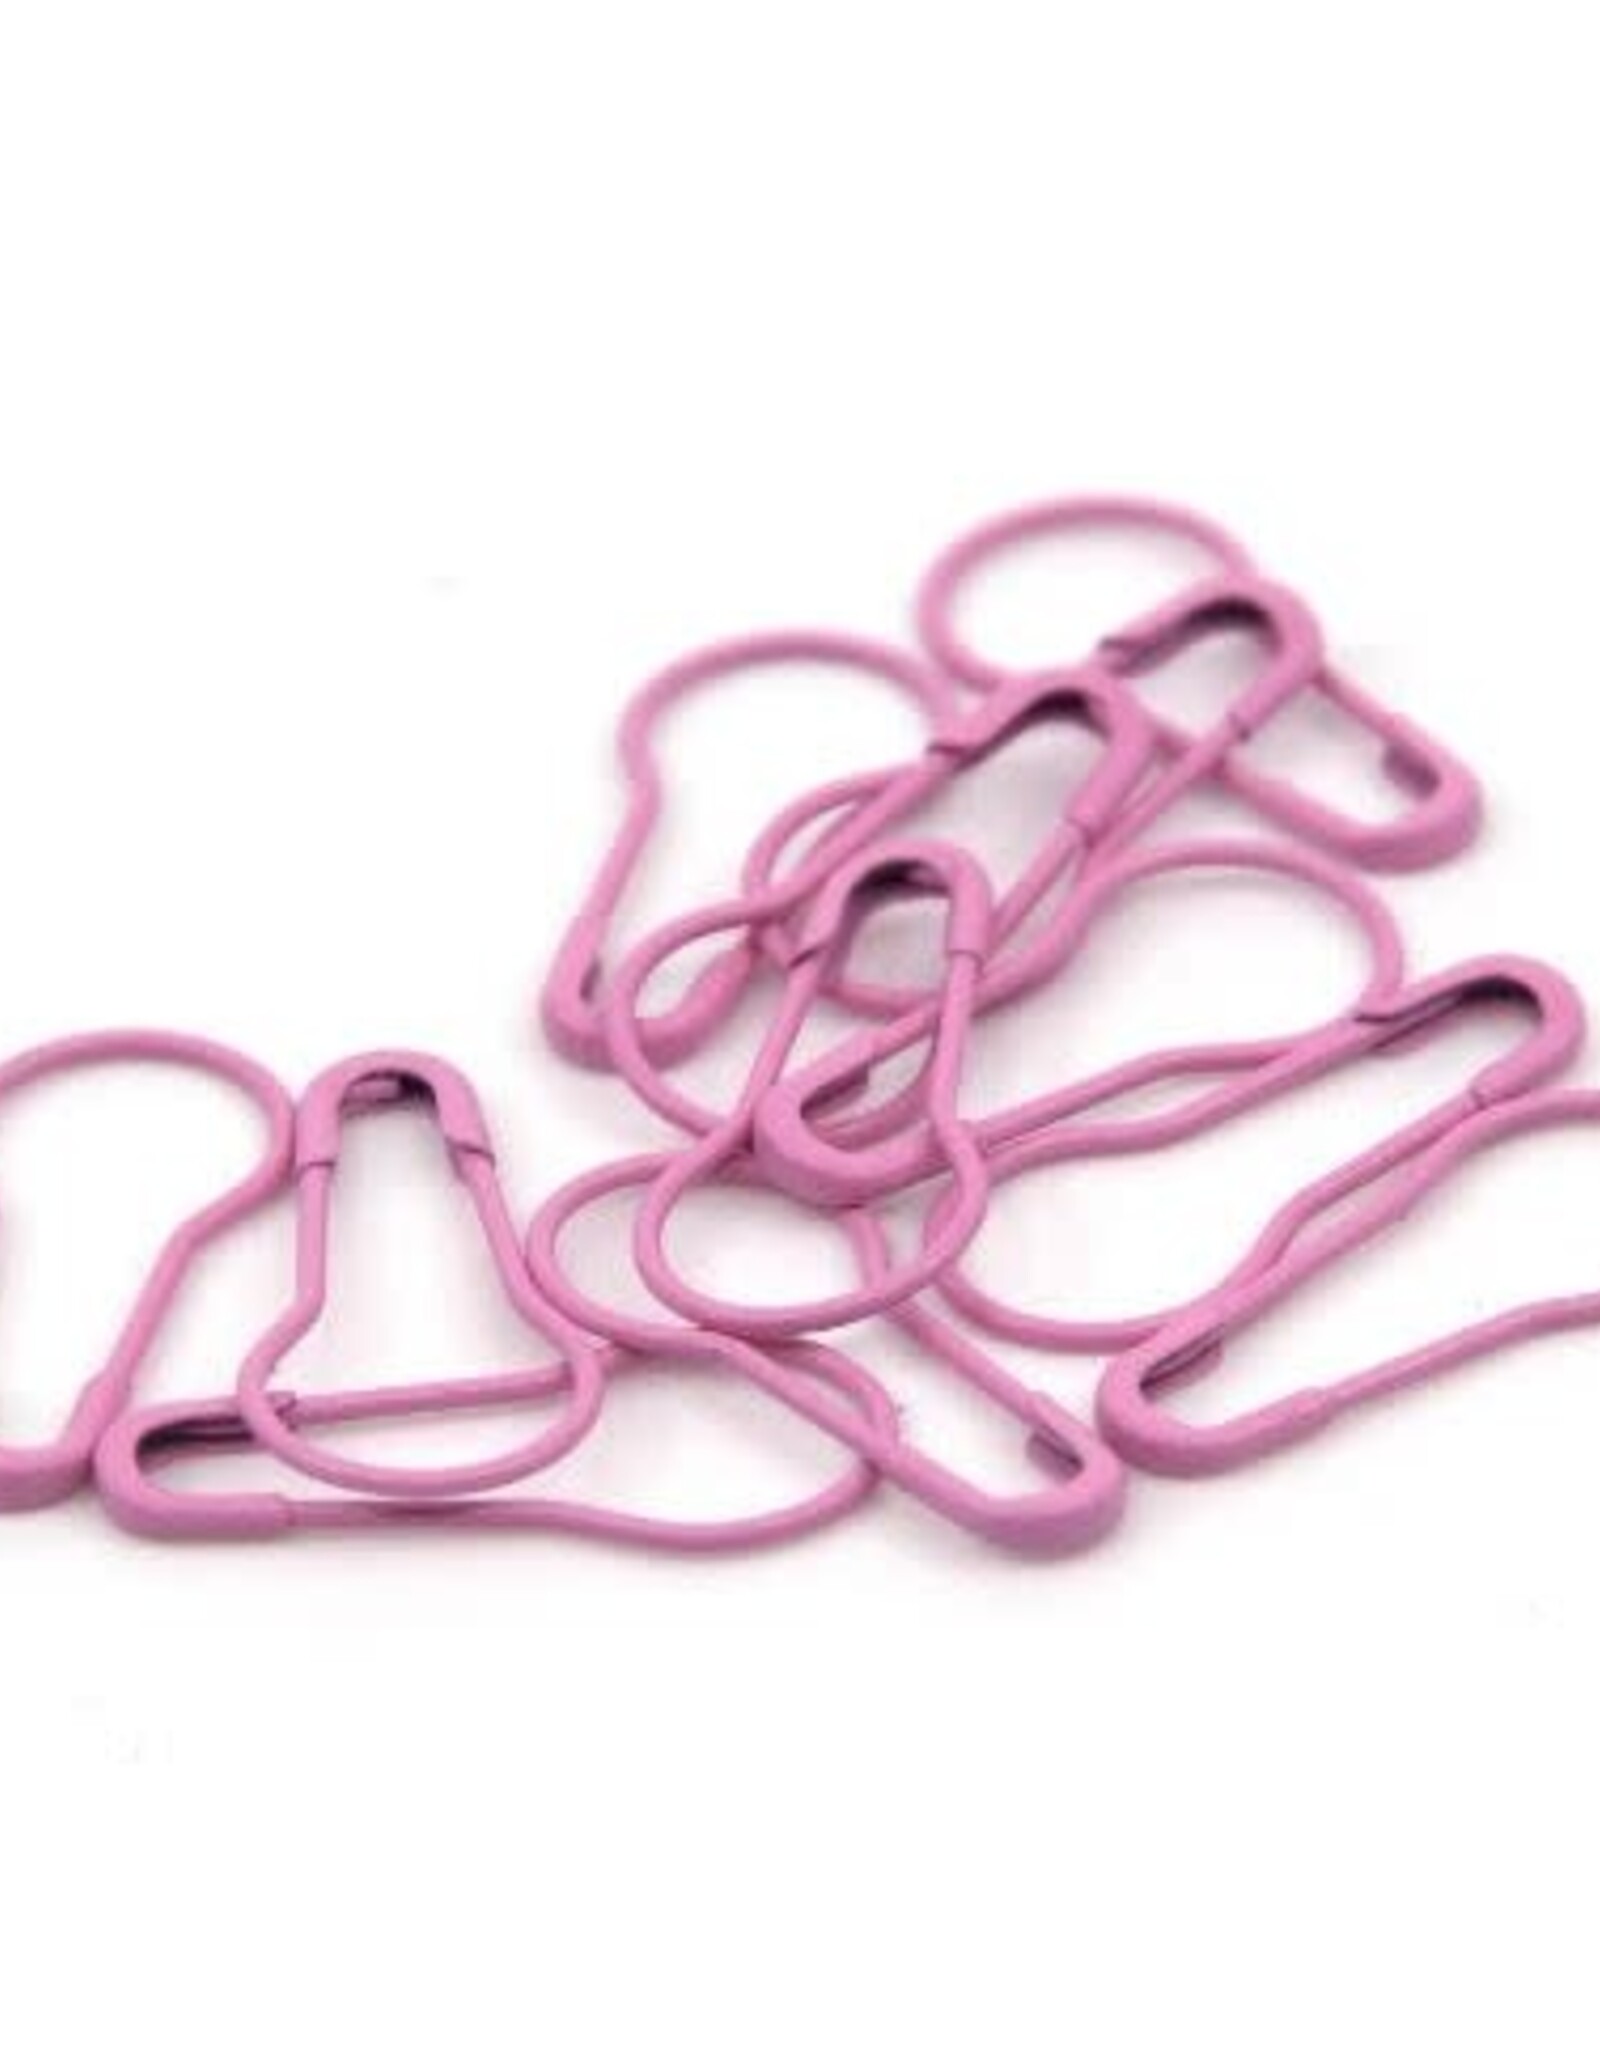 Hiya Hiya Knitters Safety Pins pink